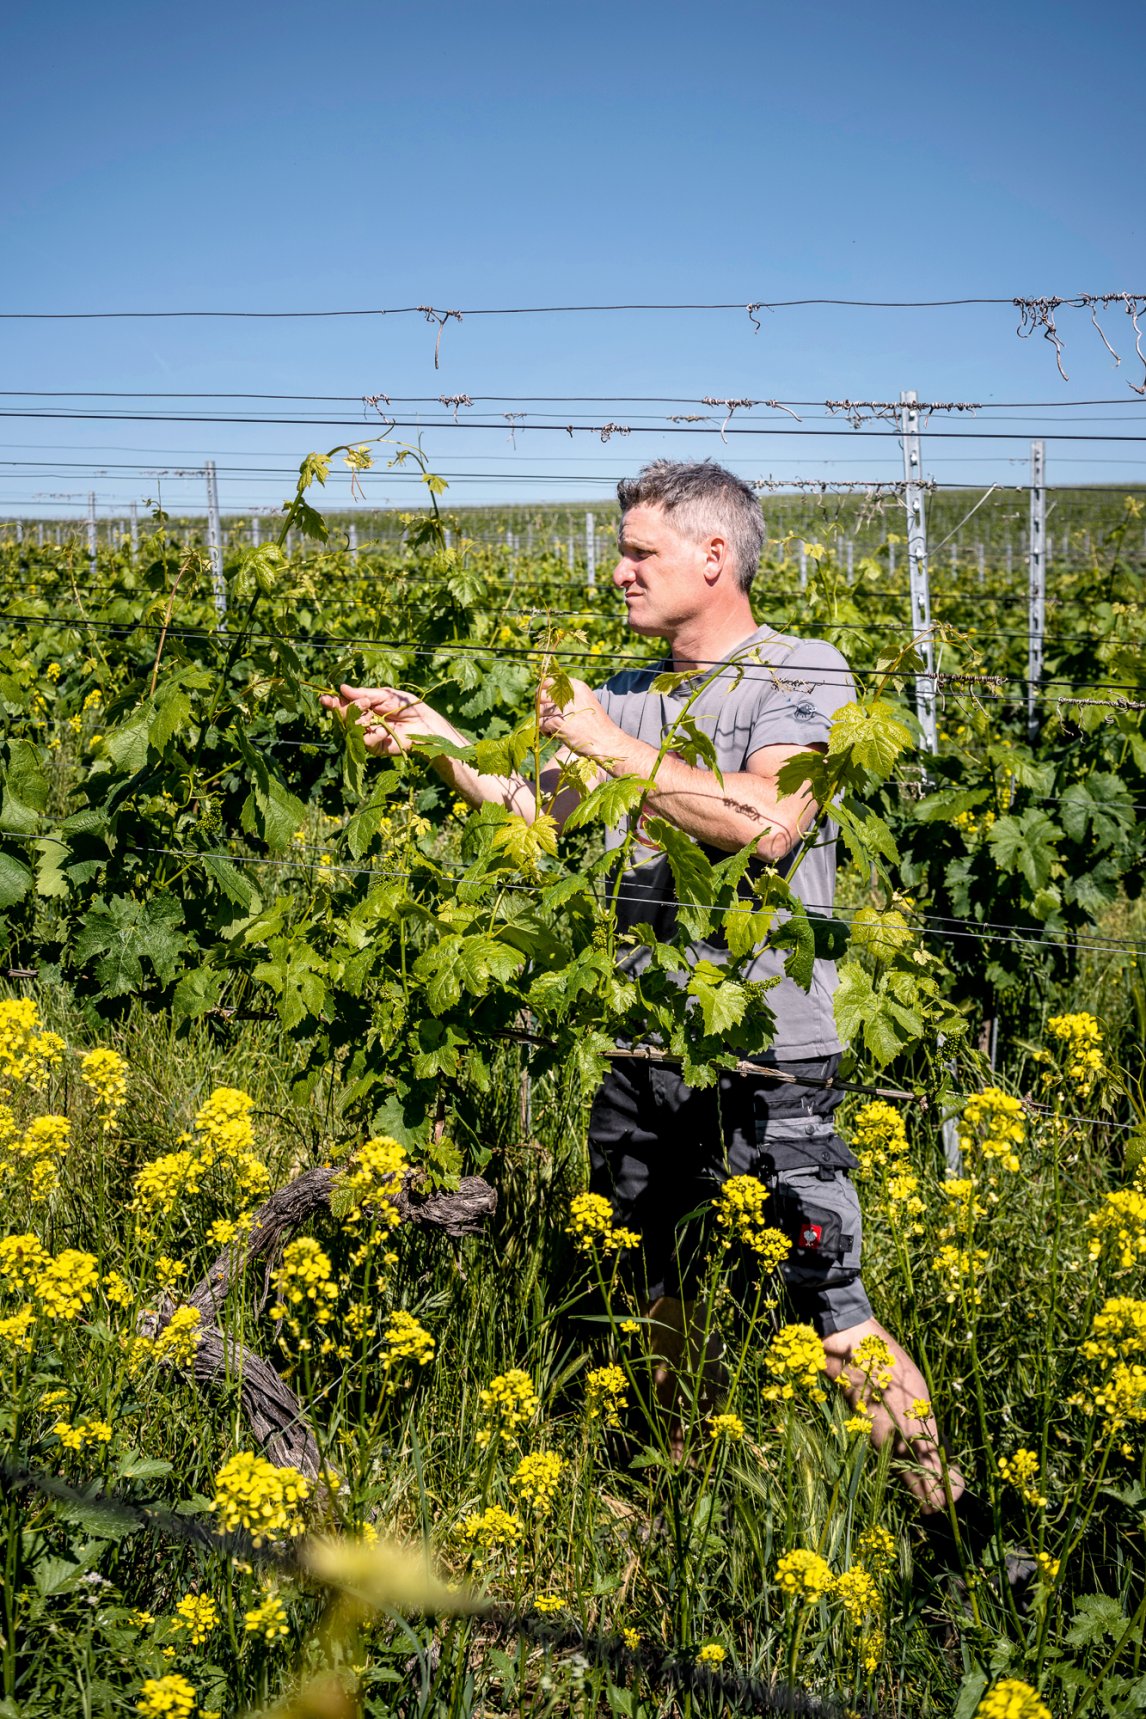 <p>TRAUBENGLÜCK <br />
Weinbauer Martin Linser auf seinem Gut in Freiburg-Opfingen. Zum Ausgleich für Bauland erhält er neue Rebflächen</p>
